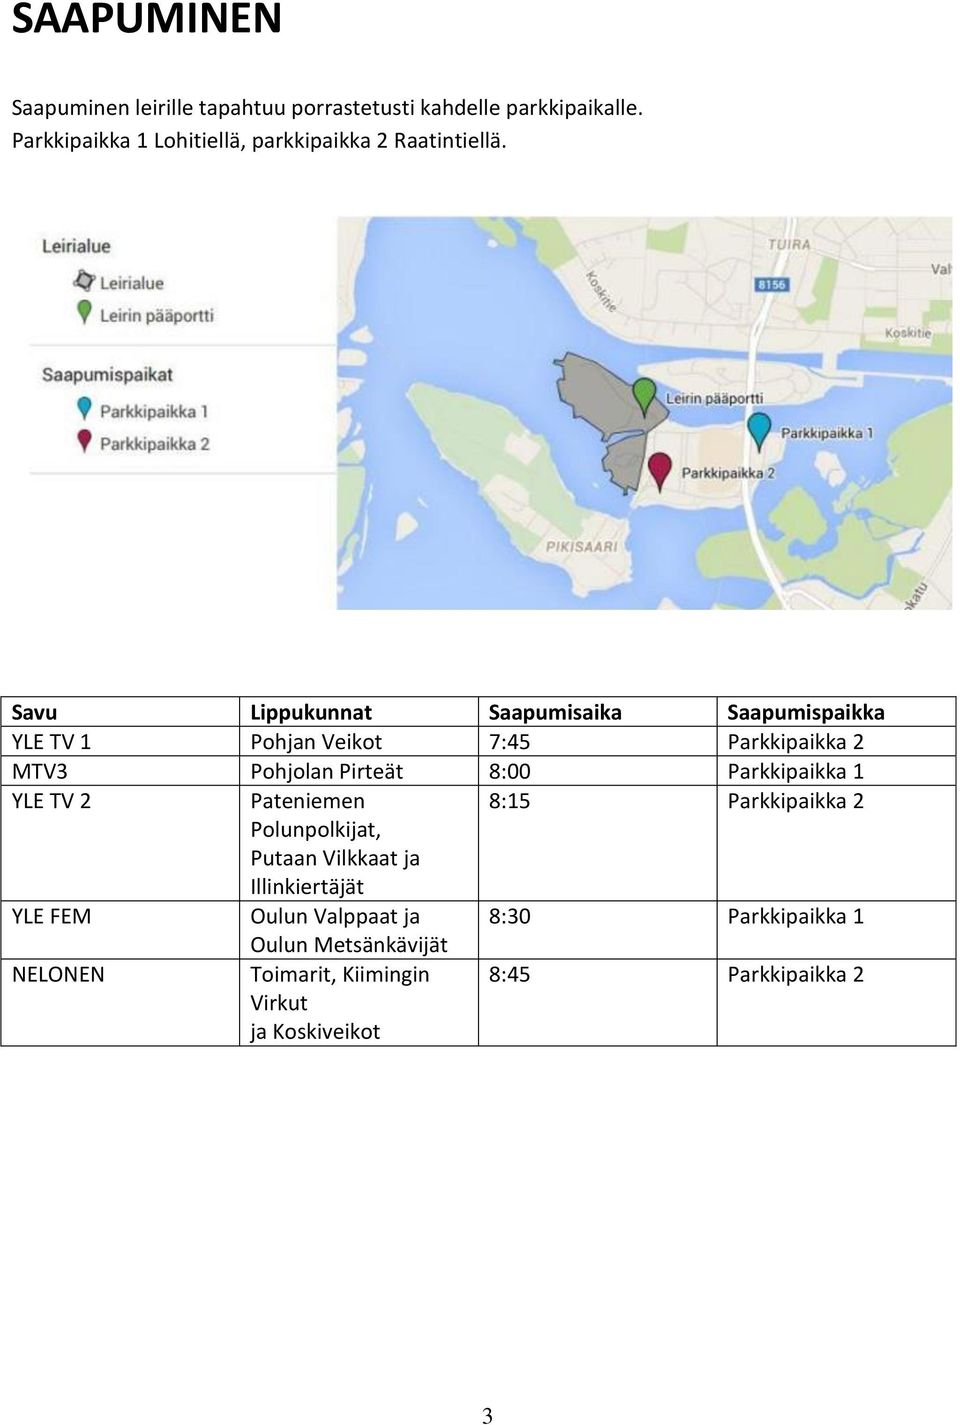 Savu Lippukunnat Saapumisaika Saapumispaikka YLE TV 1 Pohjan Veikot 7:45 Parkkipaikka 2 MTV3 Pohjolan Pirteät 8:00